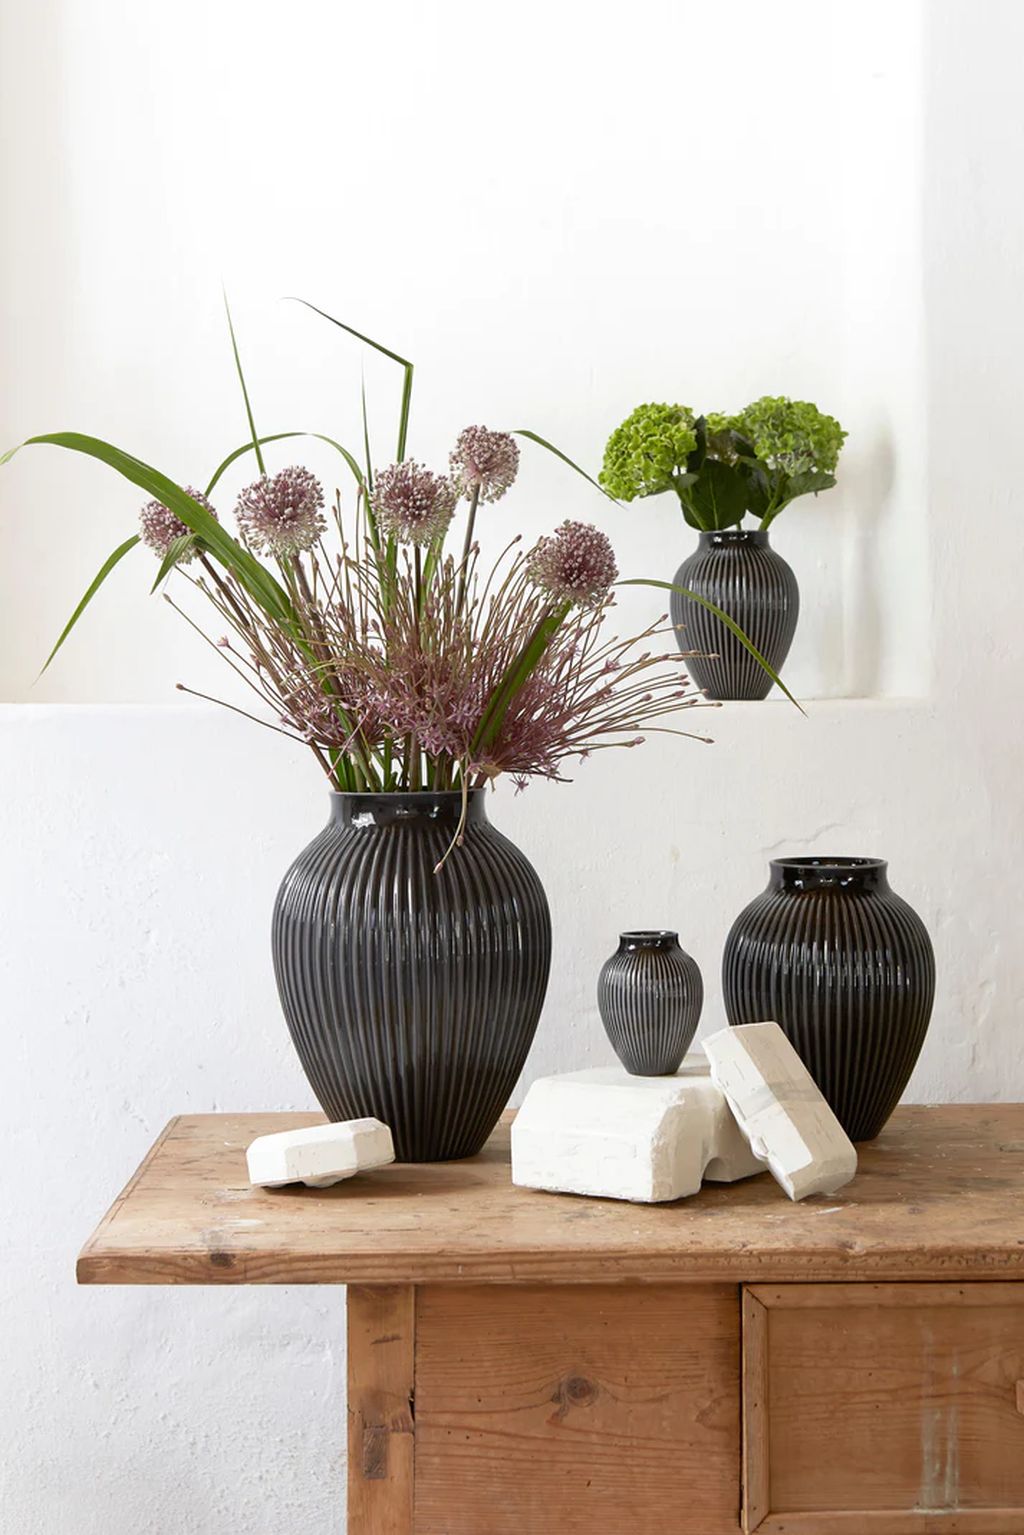 Knabstrup Keramik Vase med Riller H 27 cm, Sort